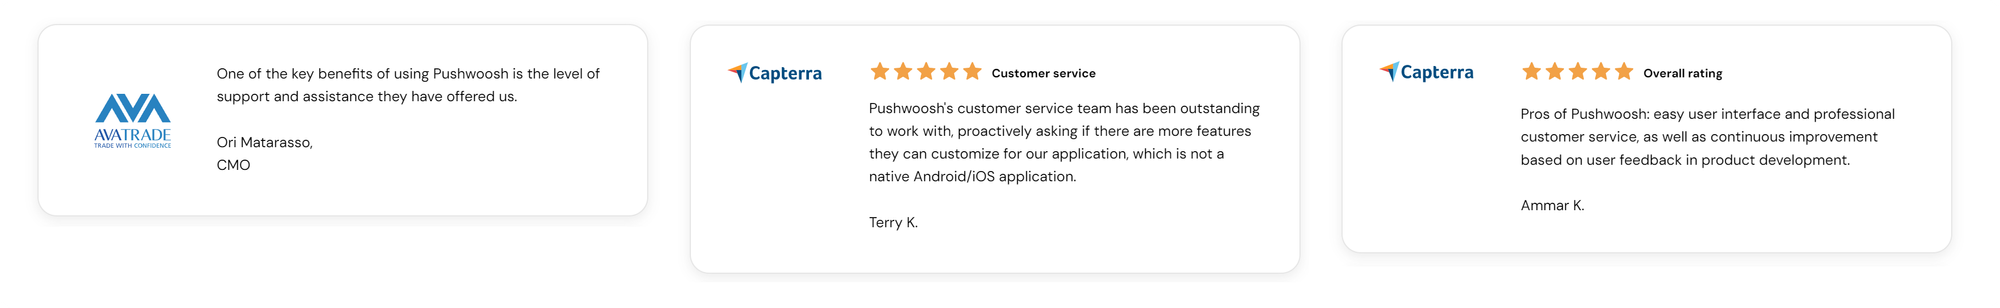 Pushwoosh reviews praising customer service